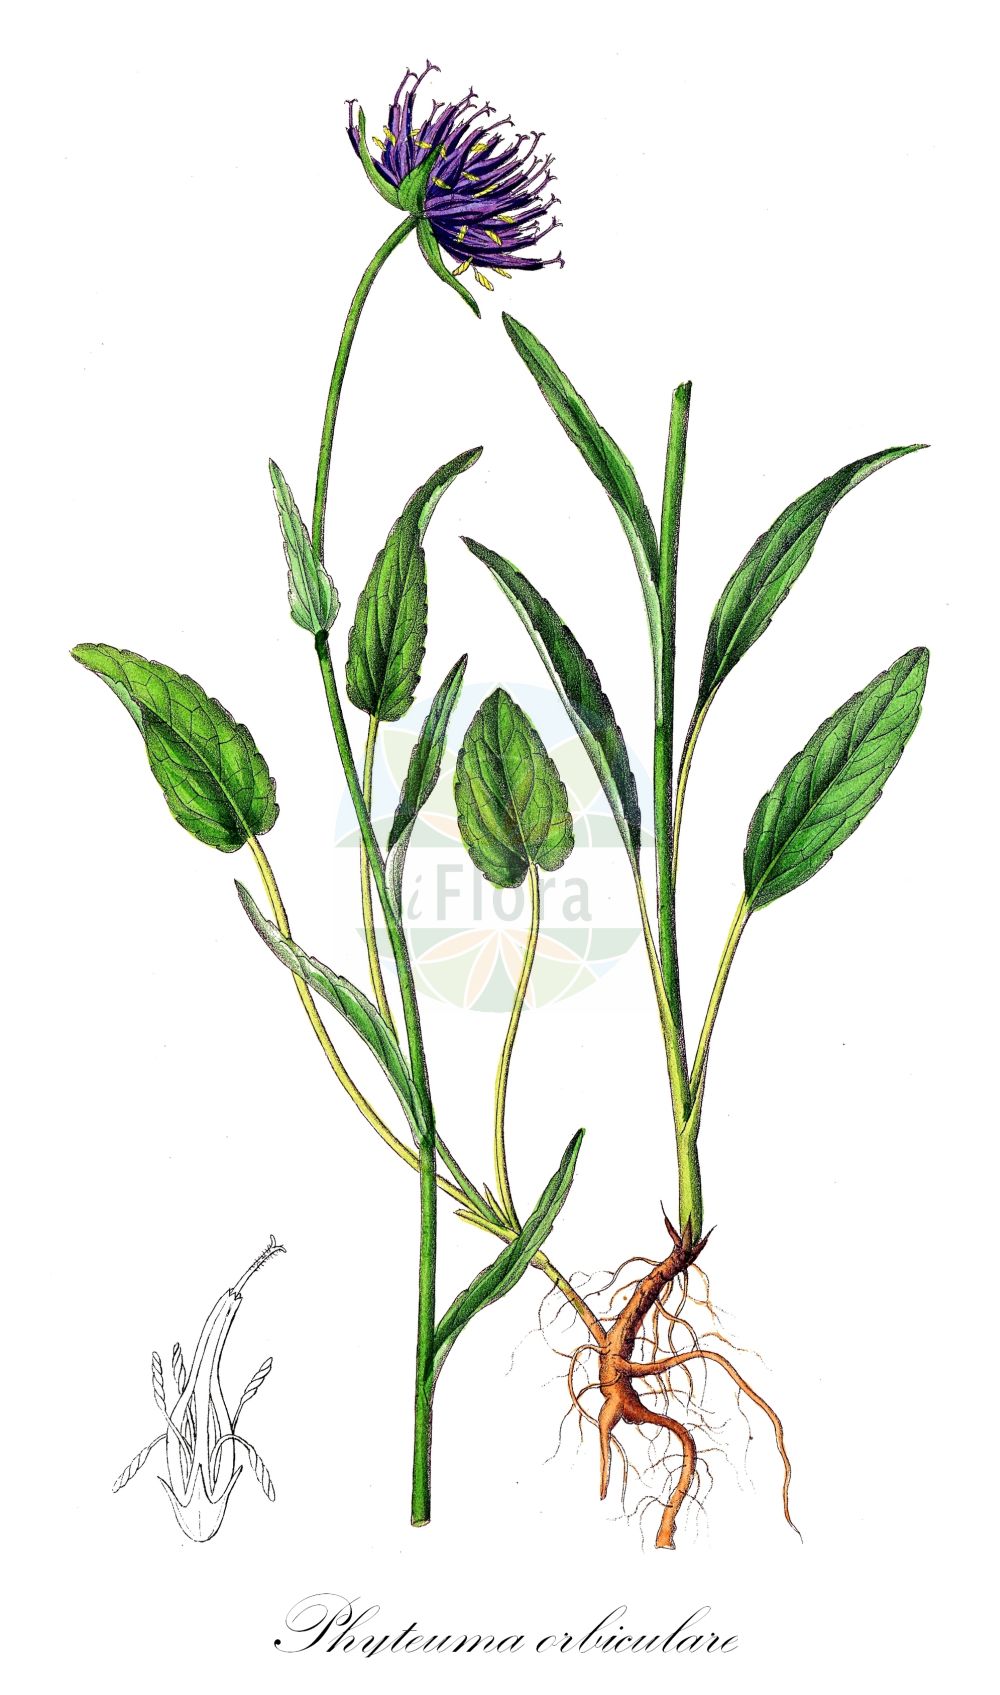 Historische Abbildung von Phyteuma orbiculare (Kugelige Teufelskralle - Round-headed Rampion). Das Bild zeigt Blatt, Bluete, Frucht und Same. ---- Historical Drawing of Phyteuma orbiculare (Kugelige Teufelskralle - Round-headed Rampion). The image is showing leaf, flower, fruit and seed.(Phyteuma orbiculare,Kugelige Teufelskralle,Round-headed Rampion,Phyteuma austriacum,Phyteuma cordifolium,Phyteuma ellipticifolium,Phyteuma fistulosum,Phyteuma hispanicum,Phyteuma lanceolatum,Phyteuma montanum,Phyteuma orbiculare,Phyteuma tenerum subsp. anglicum,Kugelige Teufelskralle,Kugelige Teufelskralle i.e.S.,Rundkopf-Teufelskralle,Round-headed Rampion,English Round-headed Rampion,Phyteuma,Teufelkralle,Rampion,Campanulaceae,Glockenblumengewächse,Lobelia family,Blatt,Bluete,Frucht,Same,leaf,flower,fruit,seed,Dietrich (1833-1844))